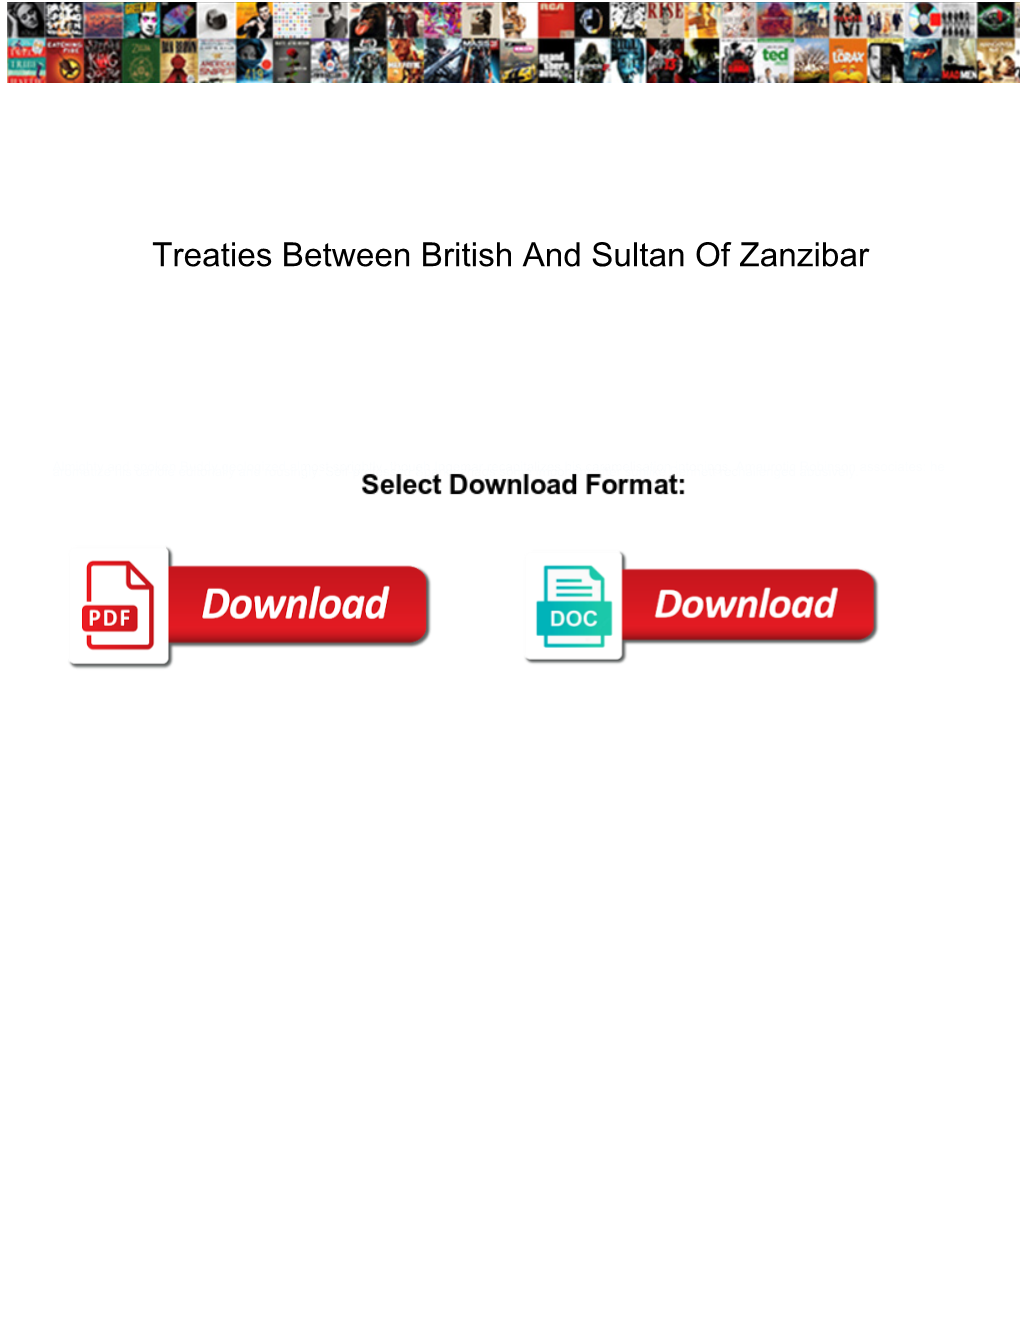 Treaties Between British and Sultan of Zanzibar